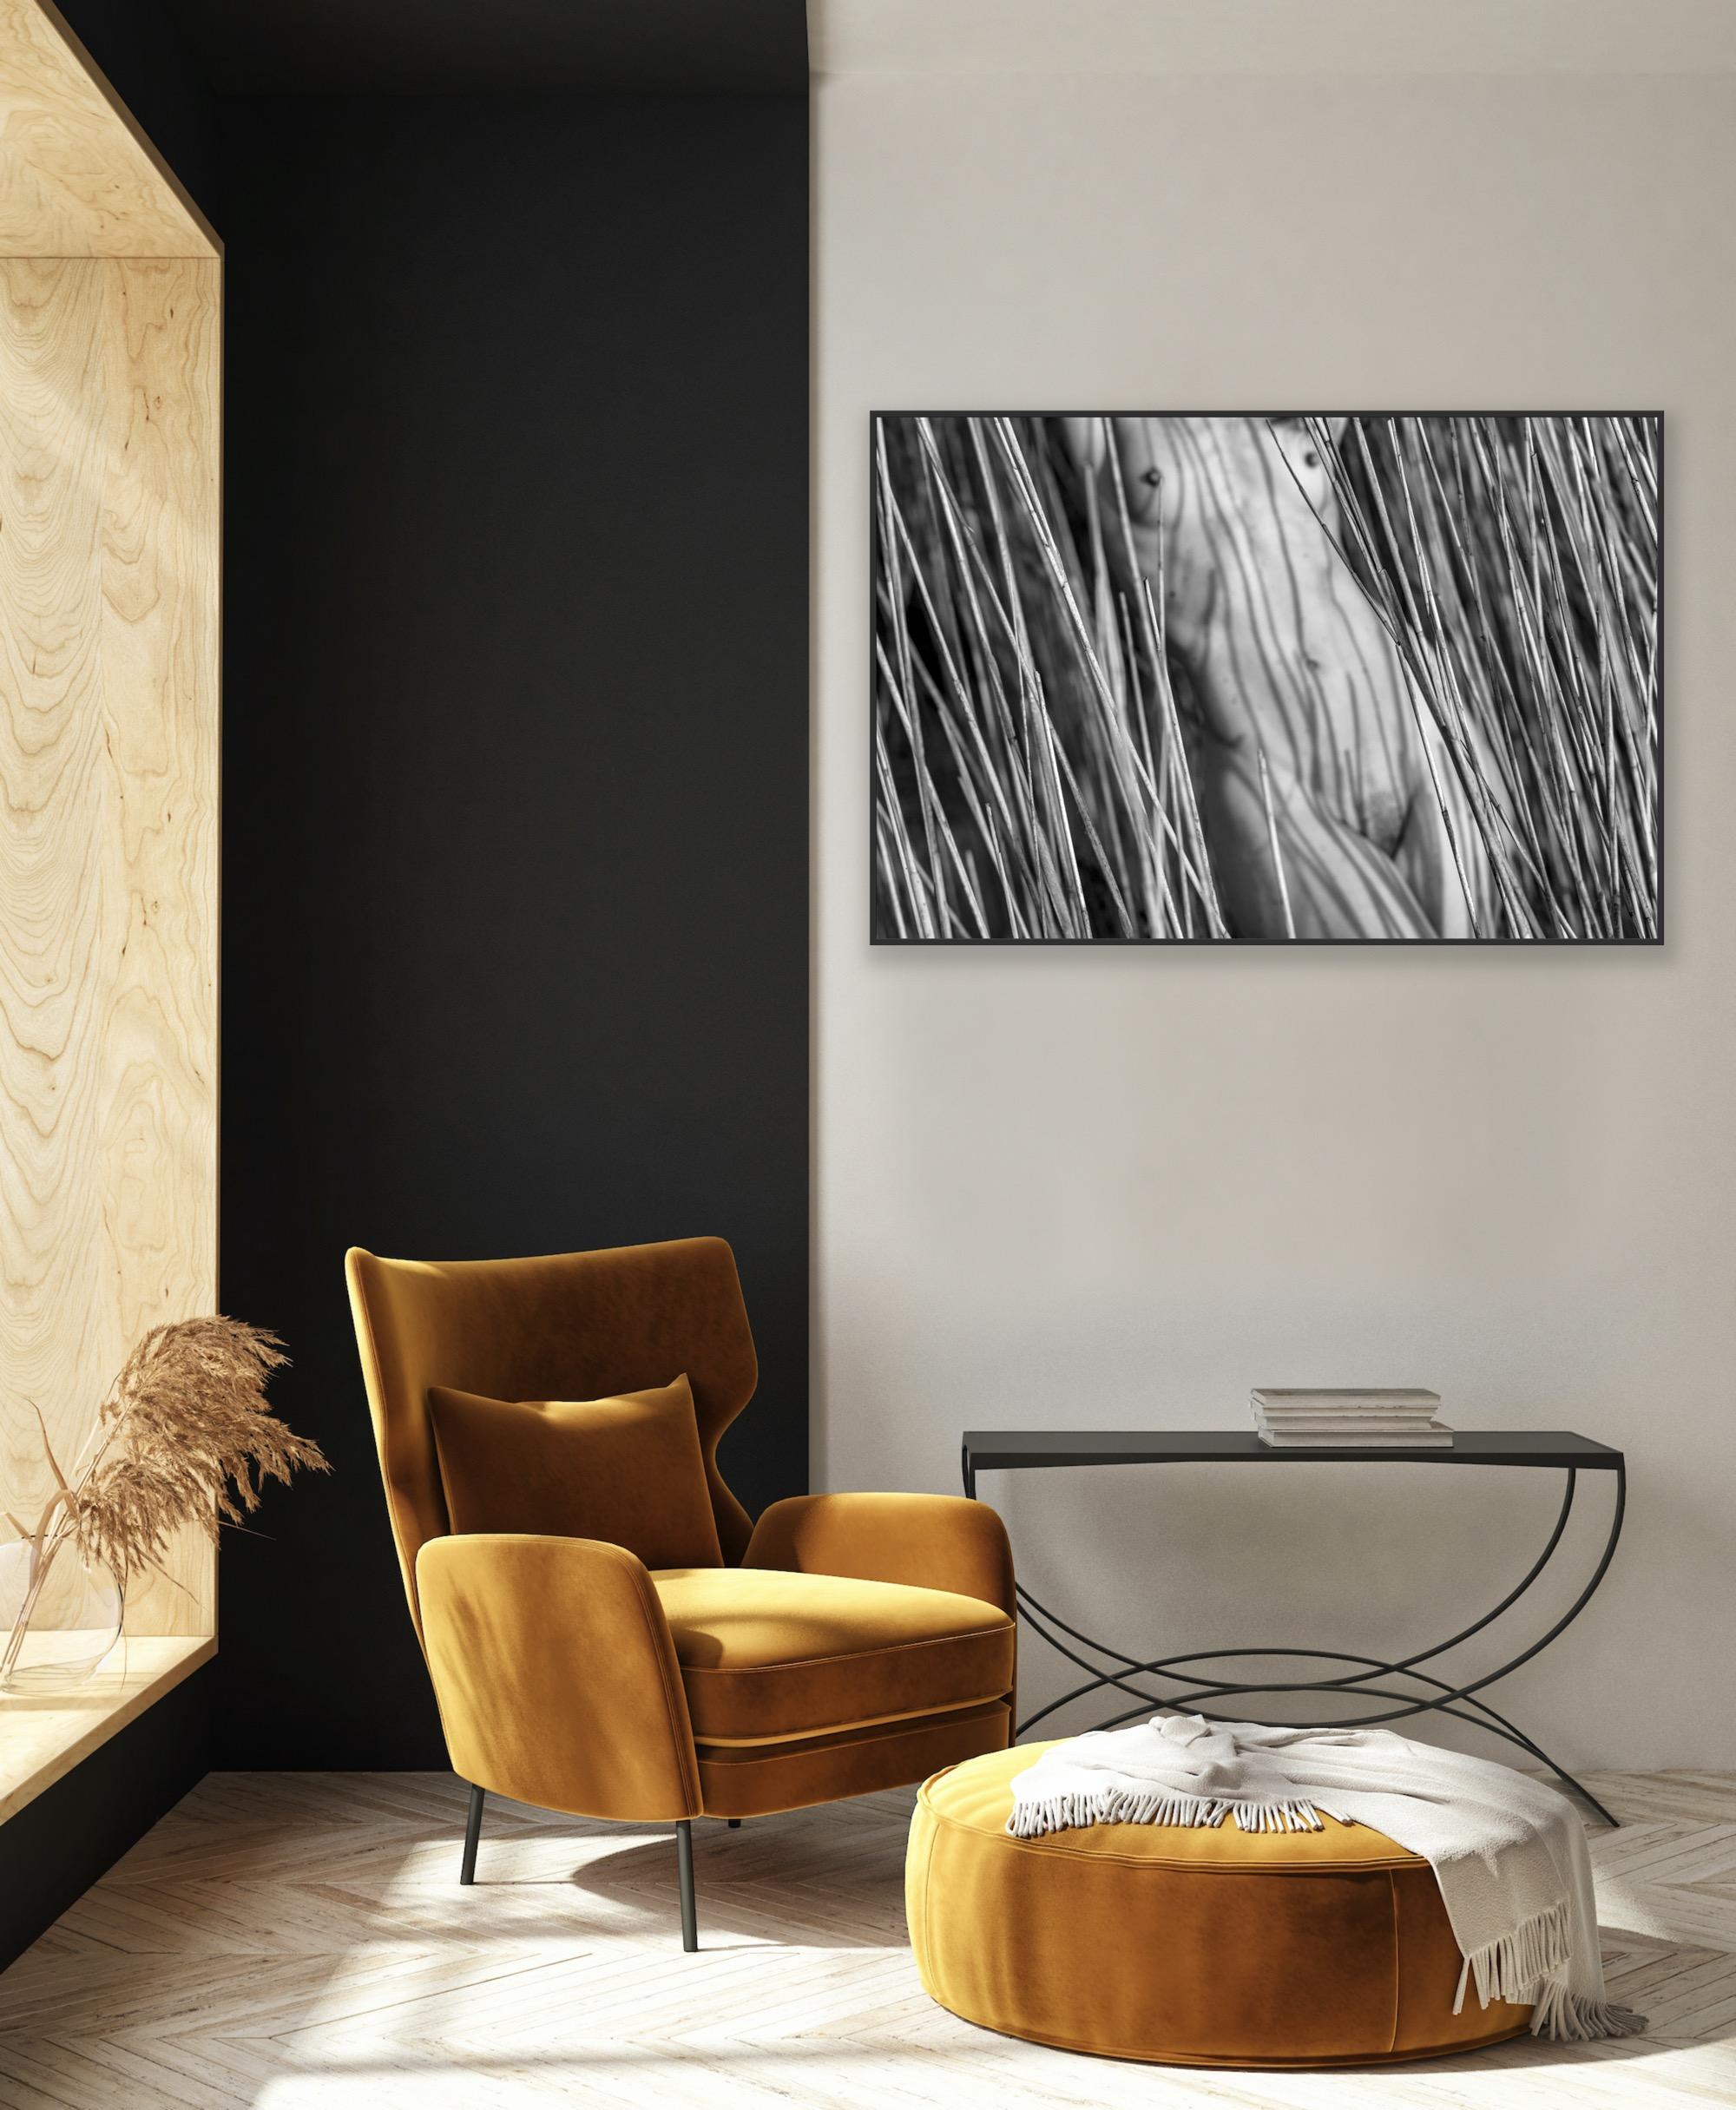 „Torso in Reeds“ – Abstrakter Schwarz-Weiß-Akt der bildenden Kunst (Zeitgenössisch), Photograph, von John Mazlish